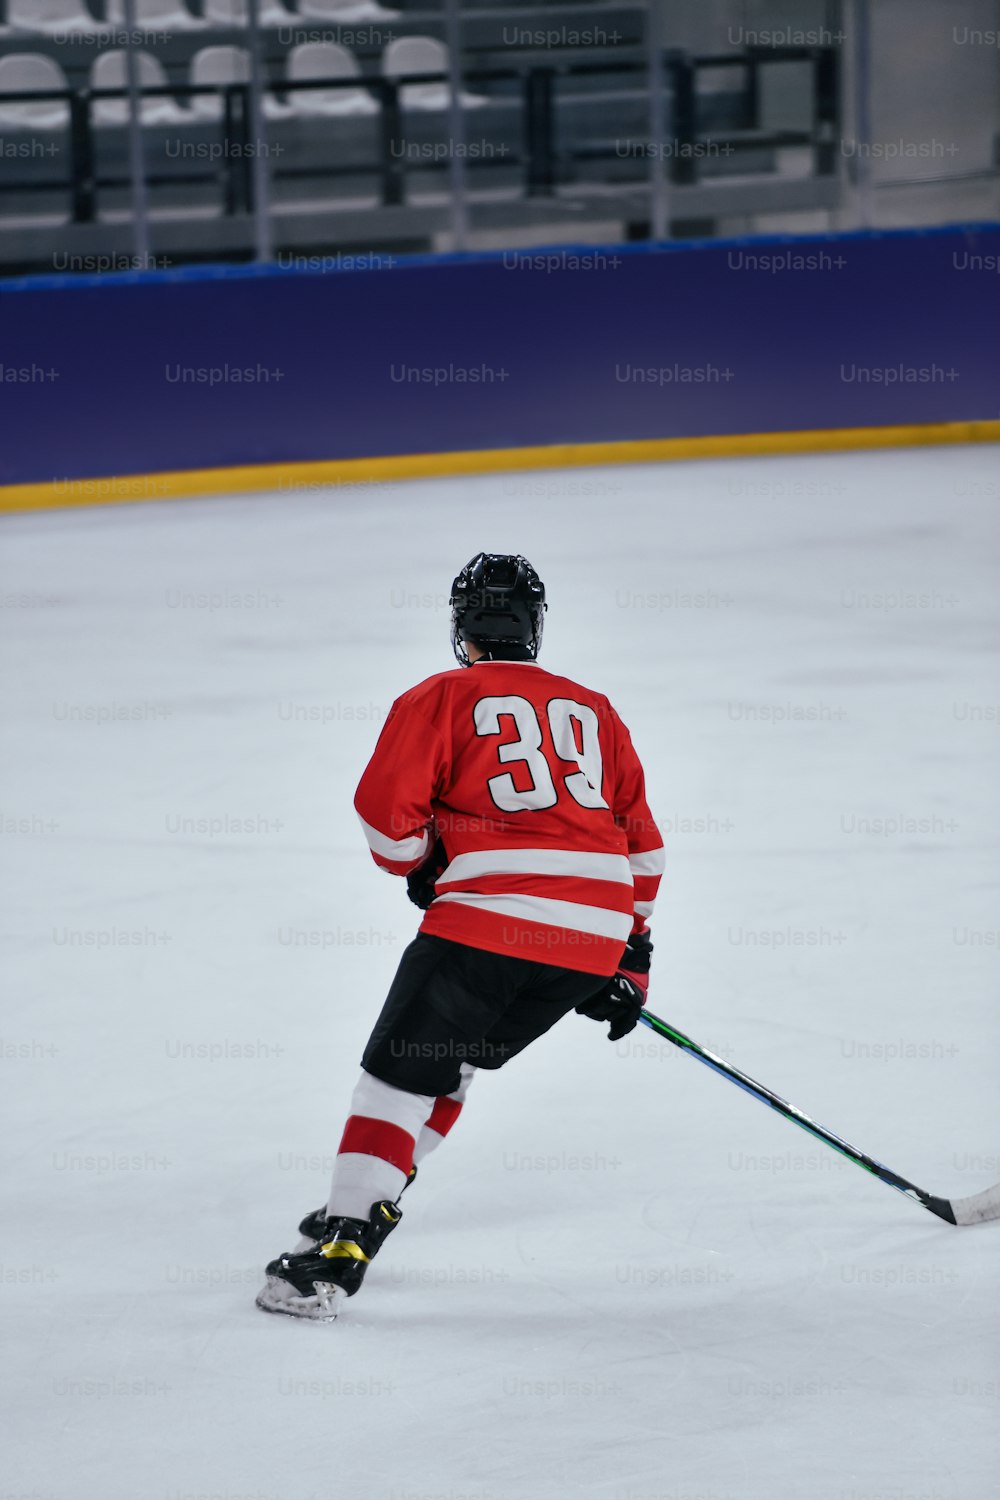 Un joueur de hockey portant un chandail rouge patinant sur une patinoire